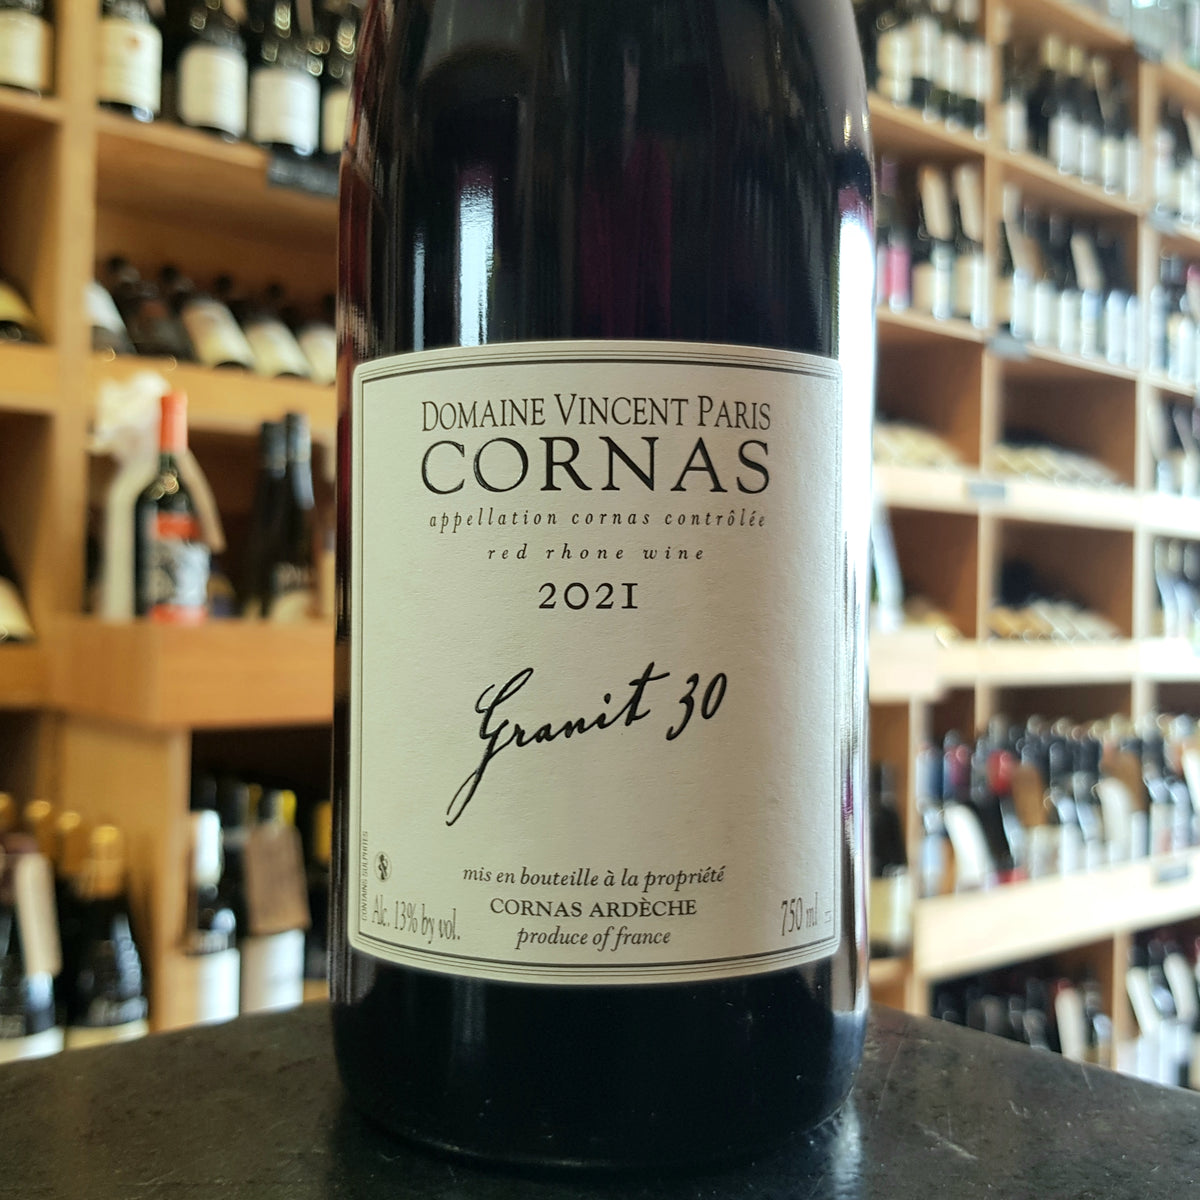 Vincent Paris Cornas Granit 30 2021 - Butler&#39;s Wine Cellar Brighton